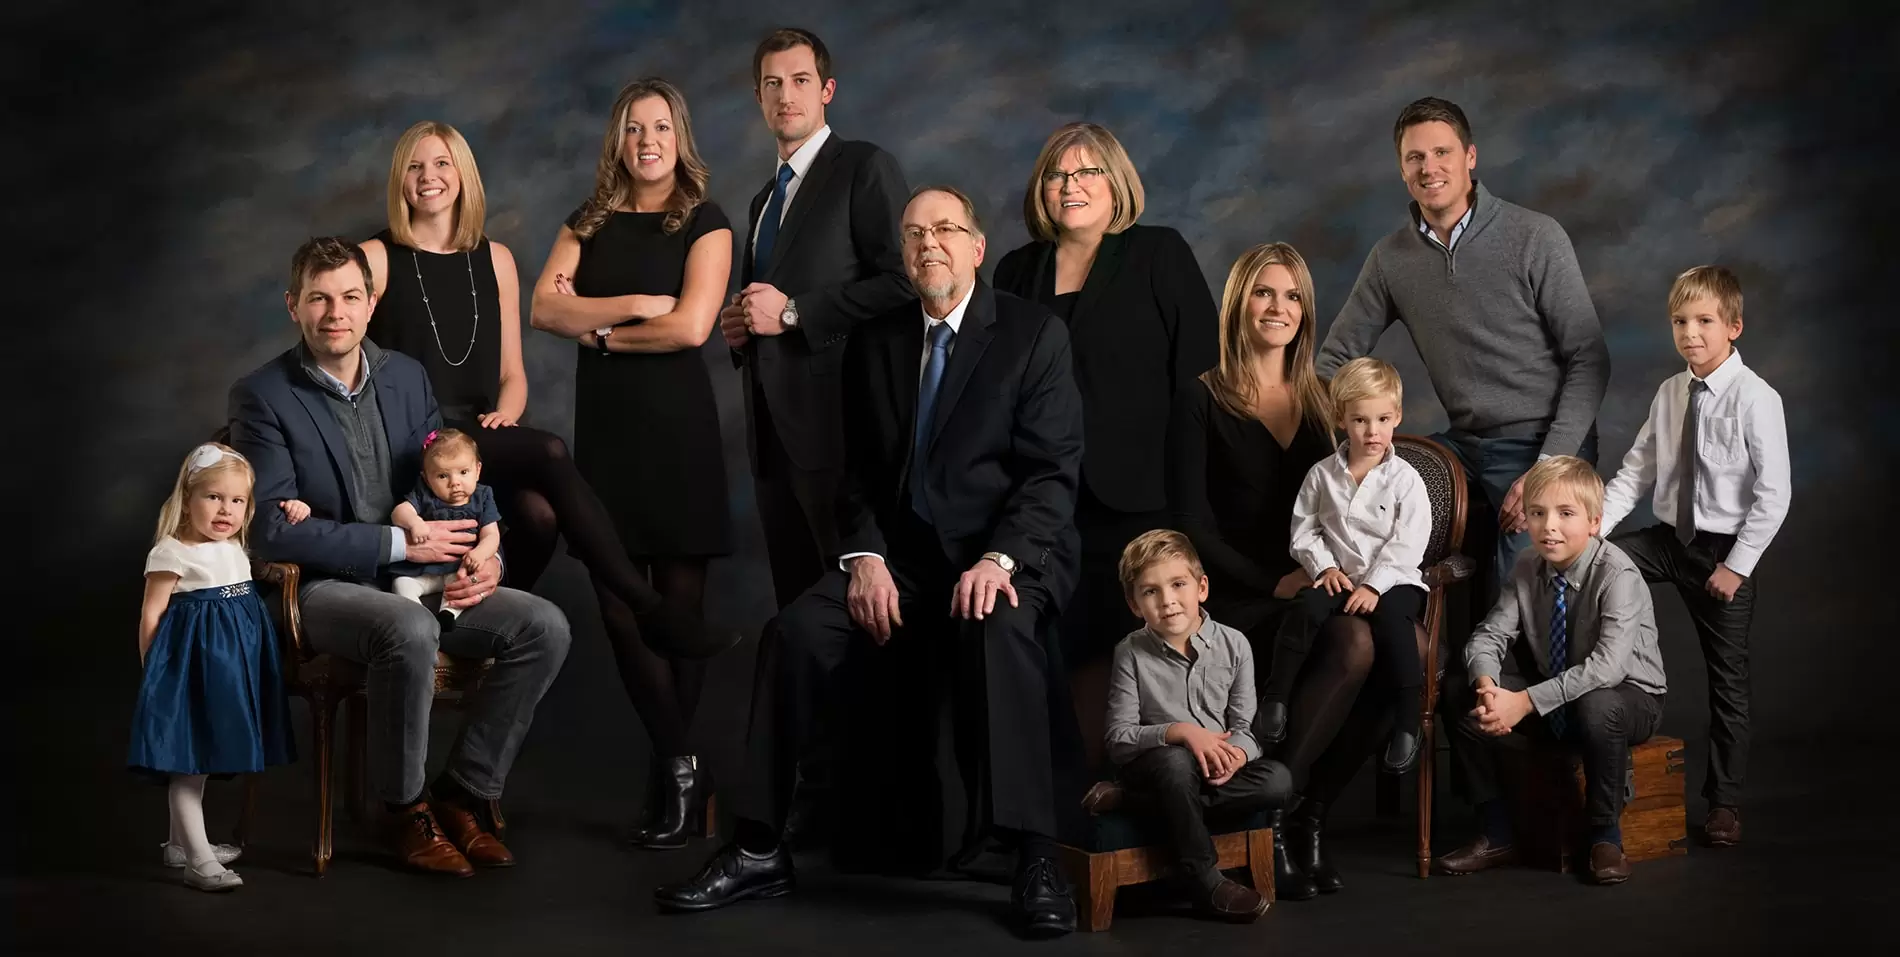 Достижения большой семьи. Family portrait в черном. Семейный портрет. Портрет большой семьи. Семейный портрет фотосессия.